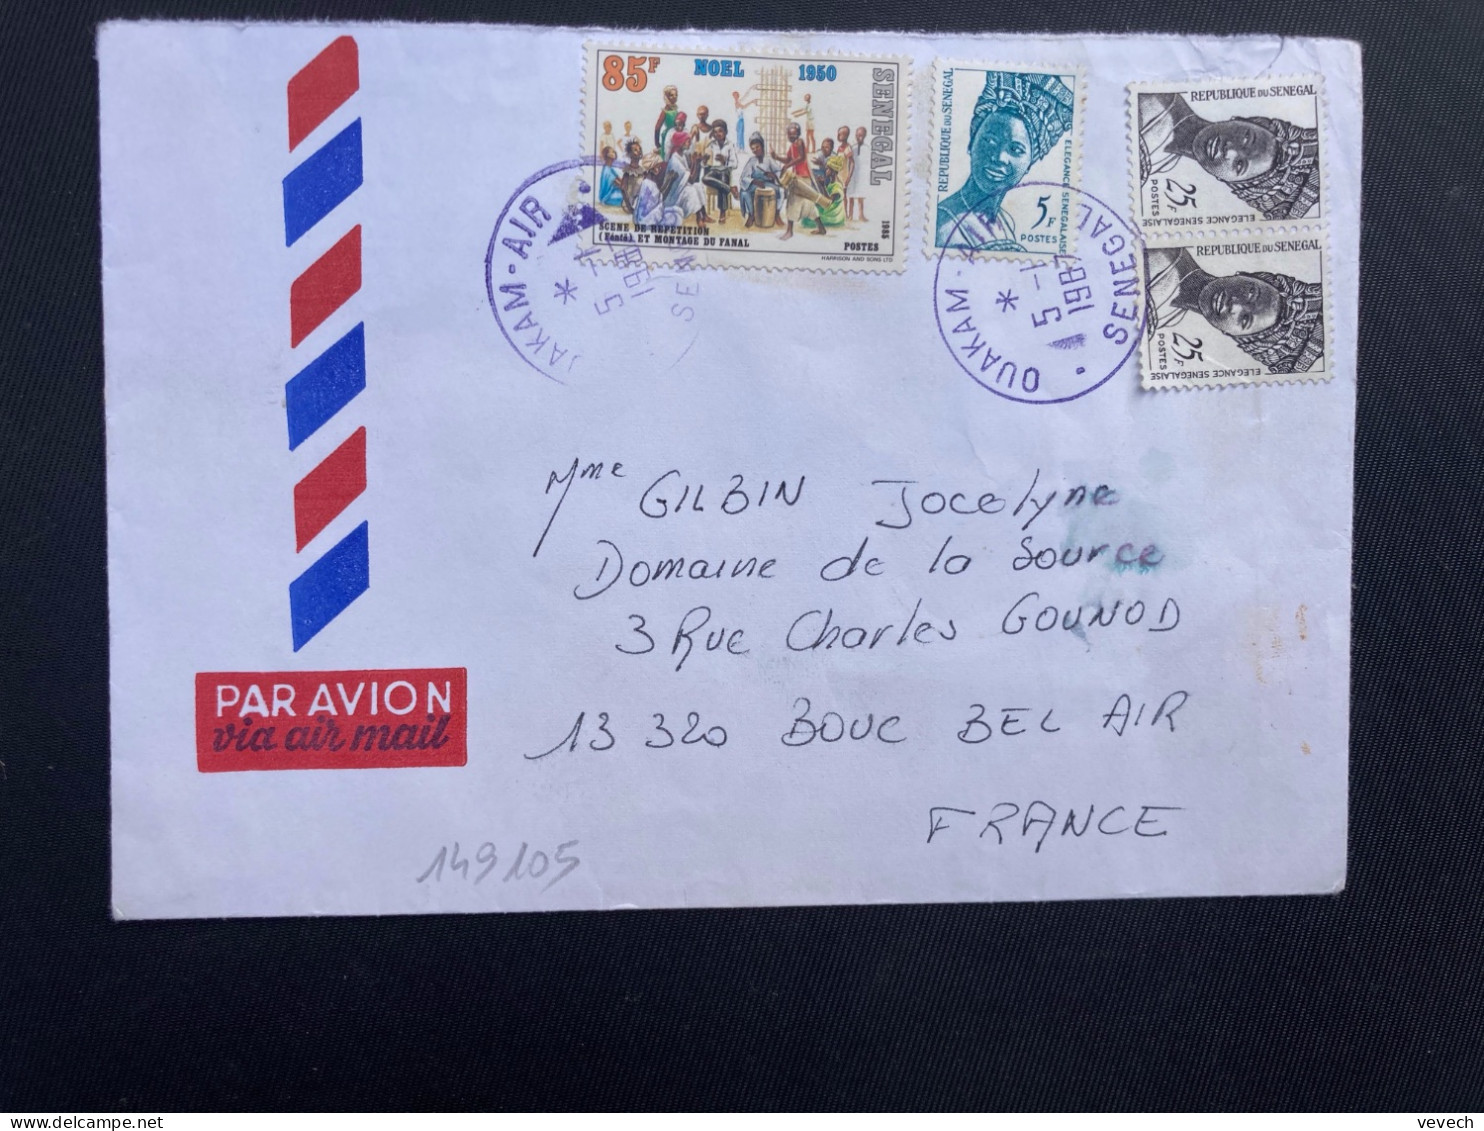 LETTRE Par Avion Pour La FRANCE TP NOEL 85F + ELEGANCE SENEGALAISE 25F Paire + 5F OBL. VIOLETTE 5-1 1987 OUAKAM AIR - Senegal (1960-...)